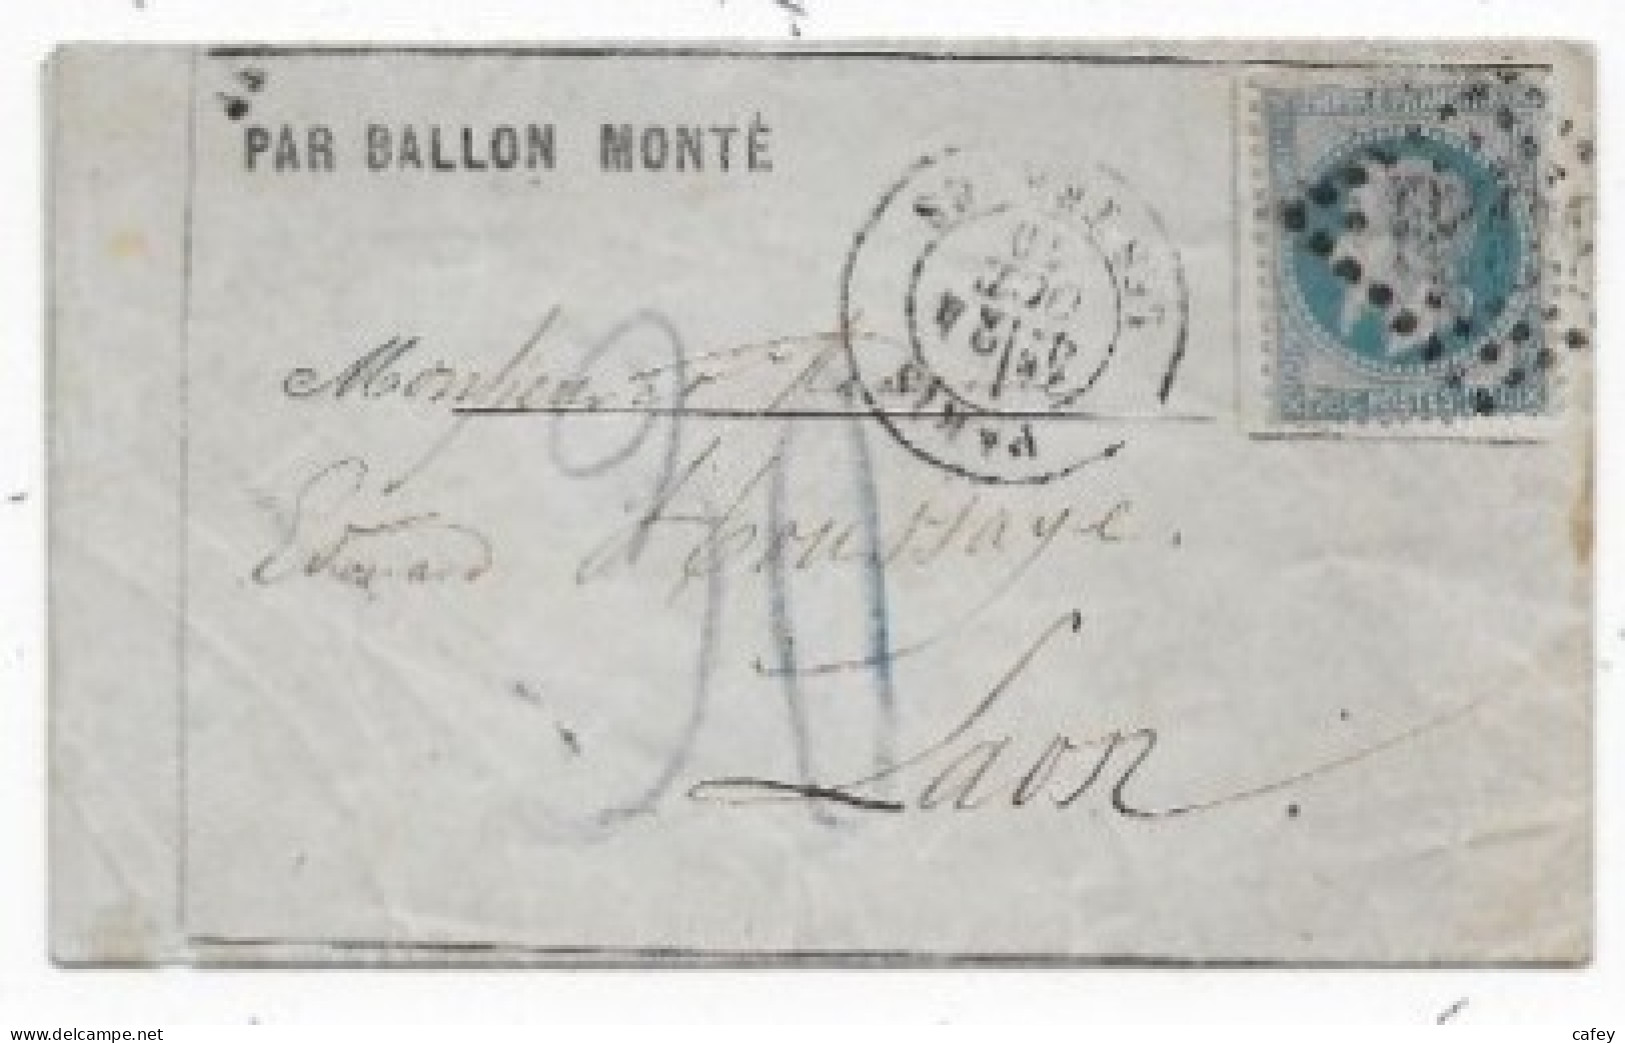 Guerre 70 Siège De PARIS Lettre Formule Par Ballon Monté PARIS LES TERNES 24/10/70 P/ LAON TAXE Allemande 30 - Guerre De 1870